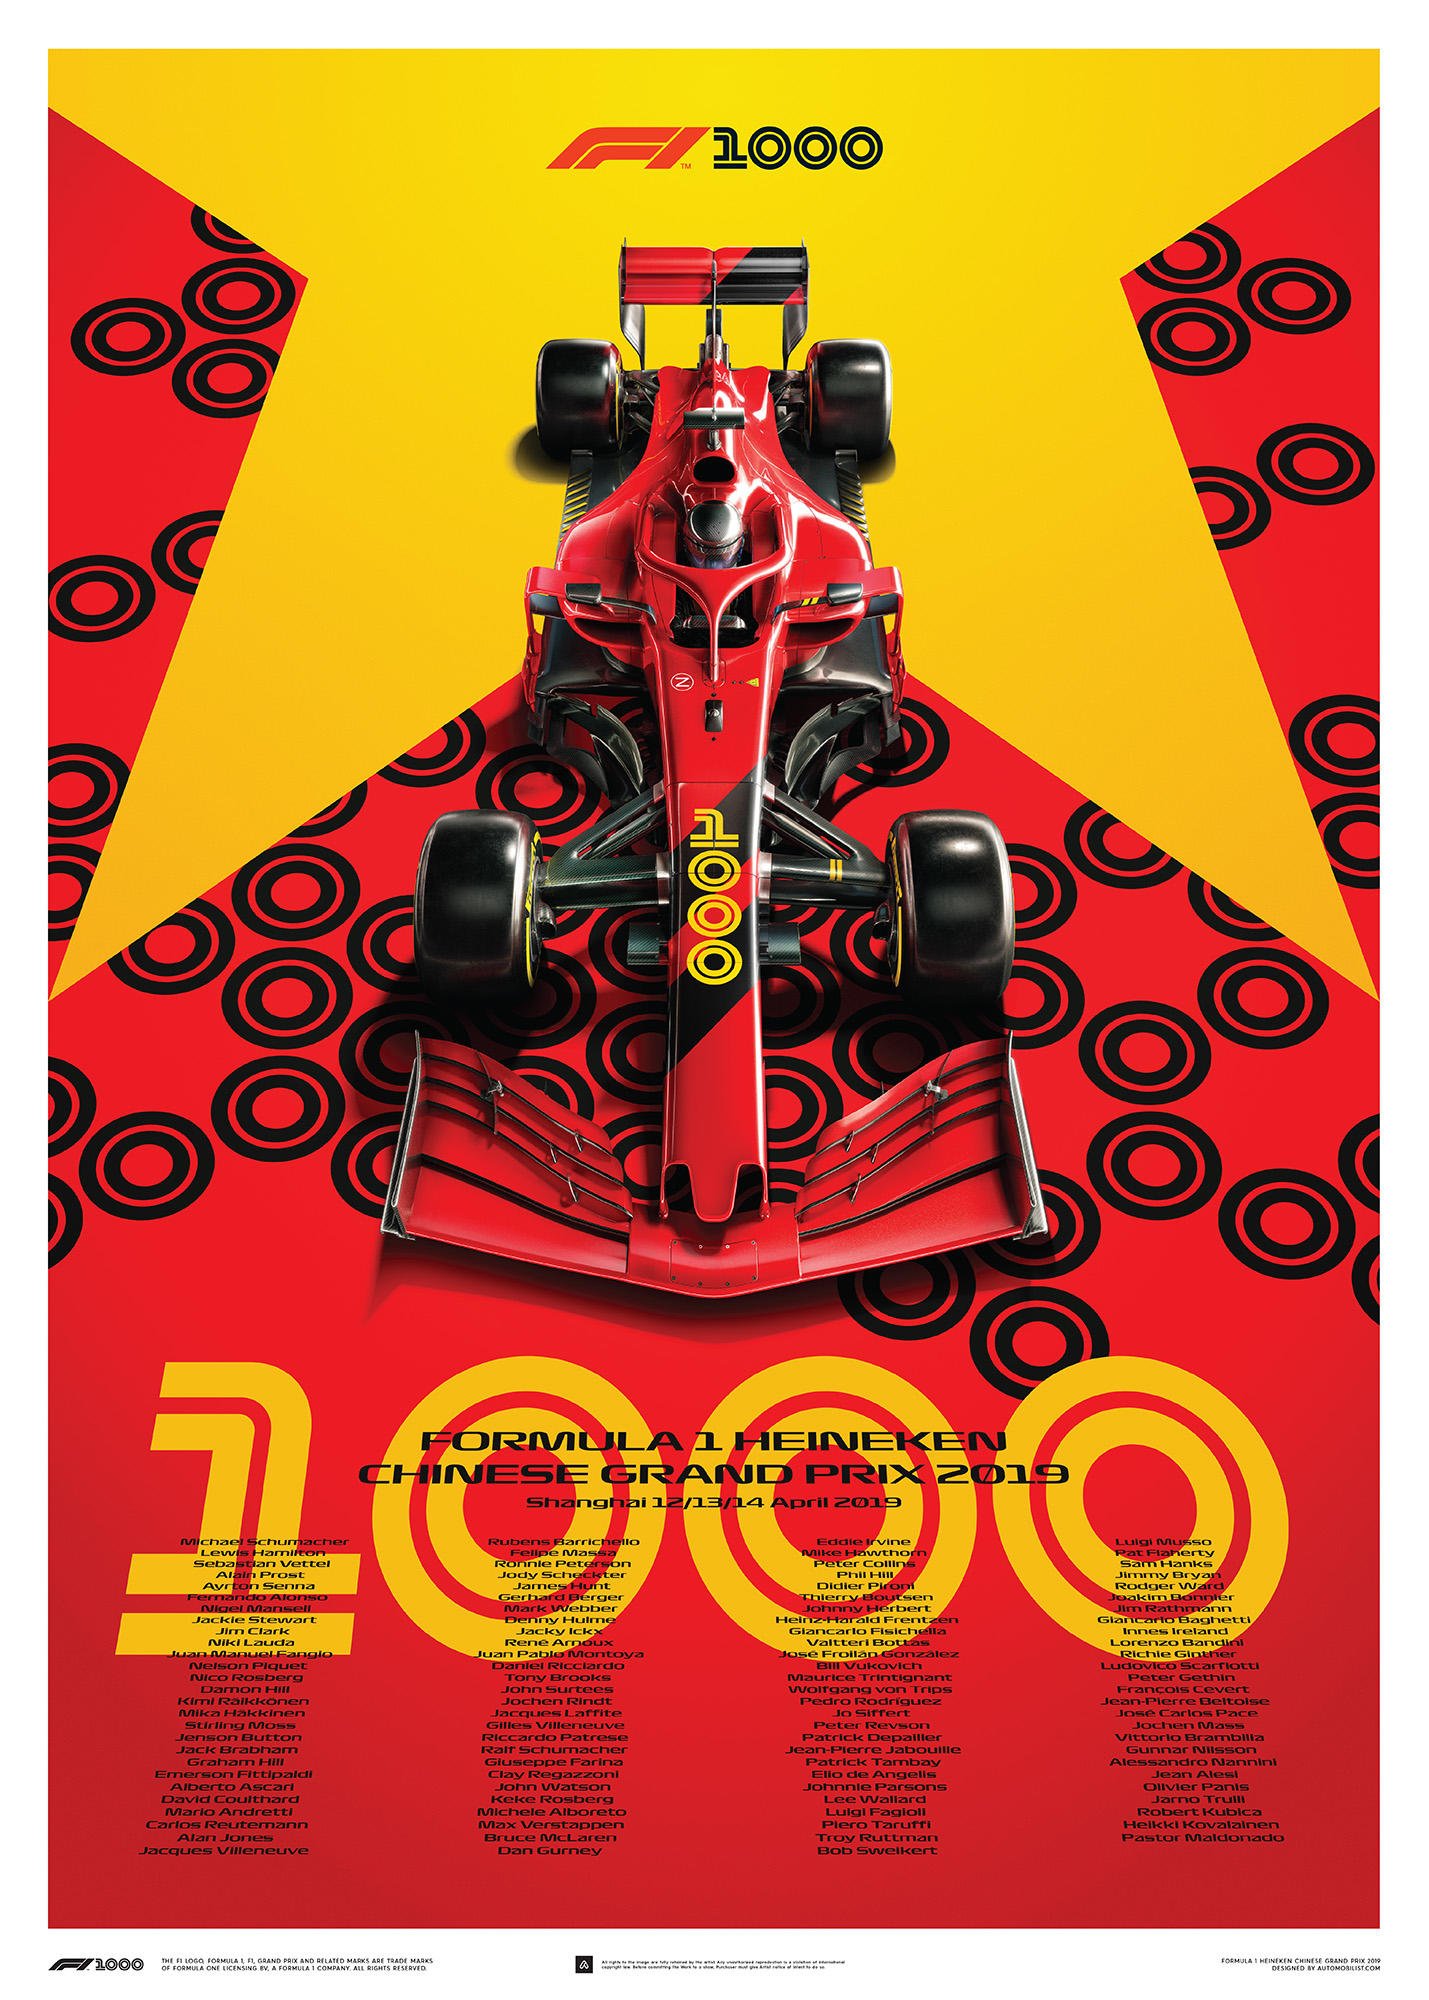 HONDA F1 RACE CAR 9107 Picture Poster Print Art A0 A1 A2 A3 A4 Car Poster 